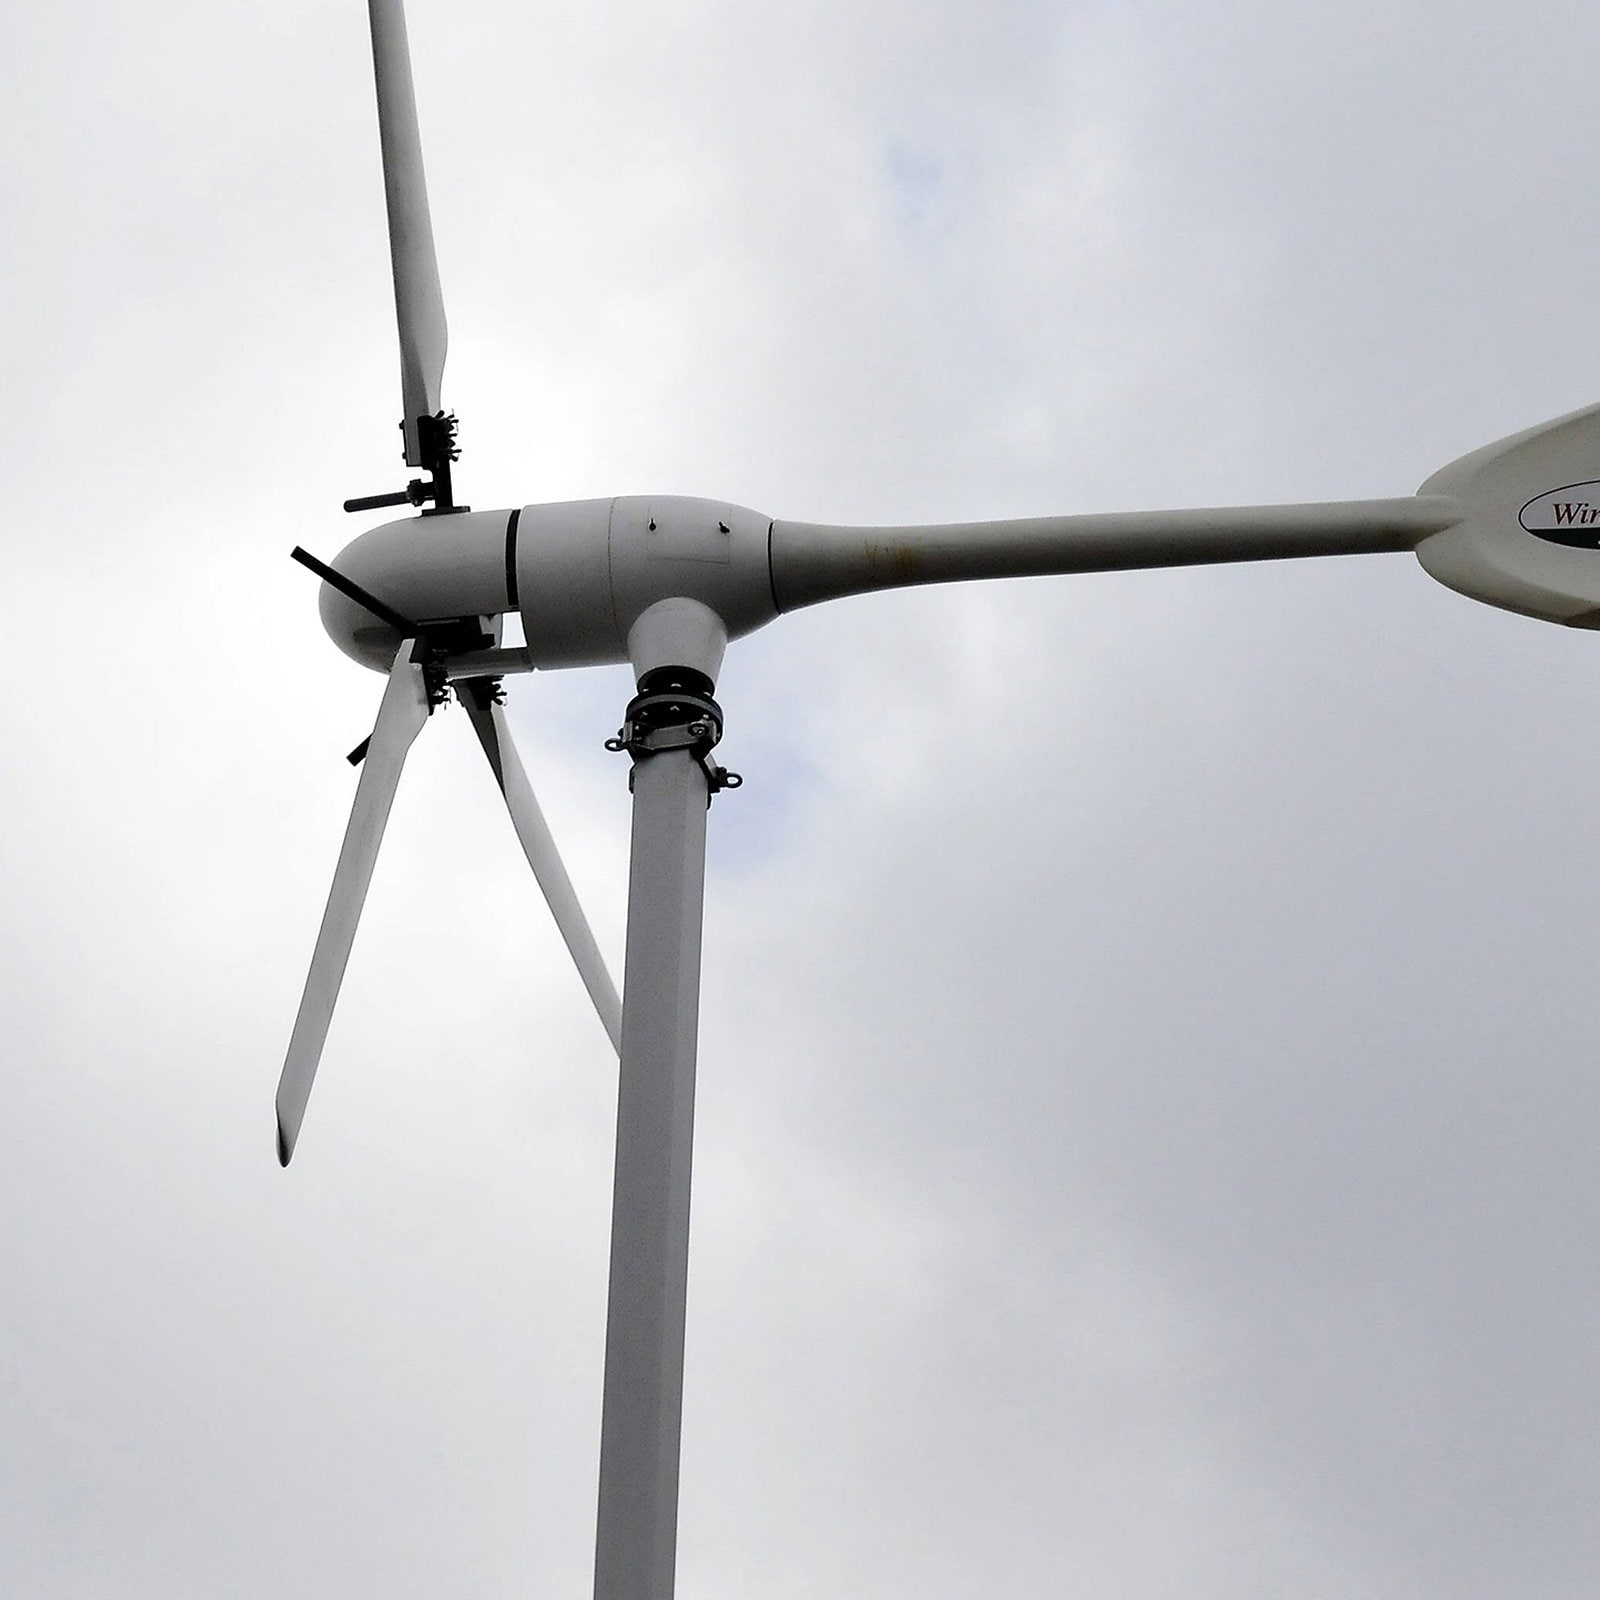 Meterhohe Windräder zur Stromerzeugung im Garten erlaubt?